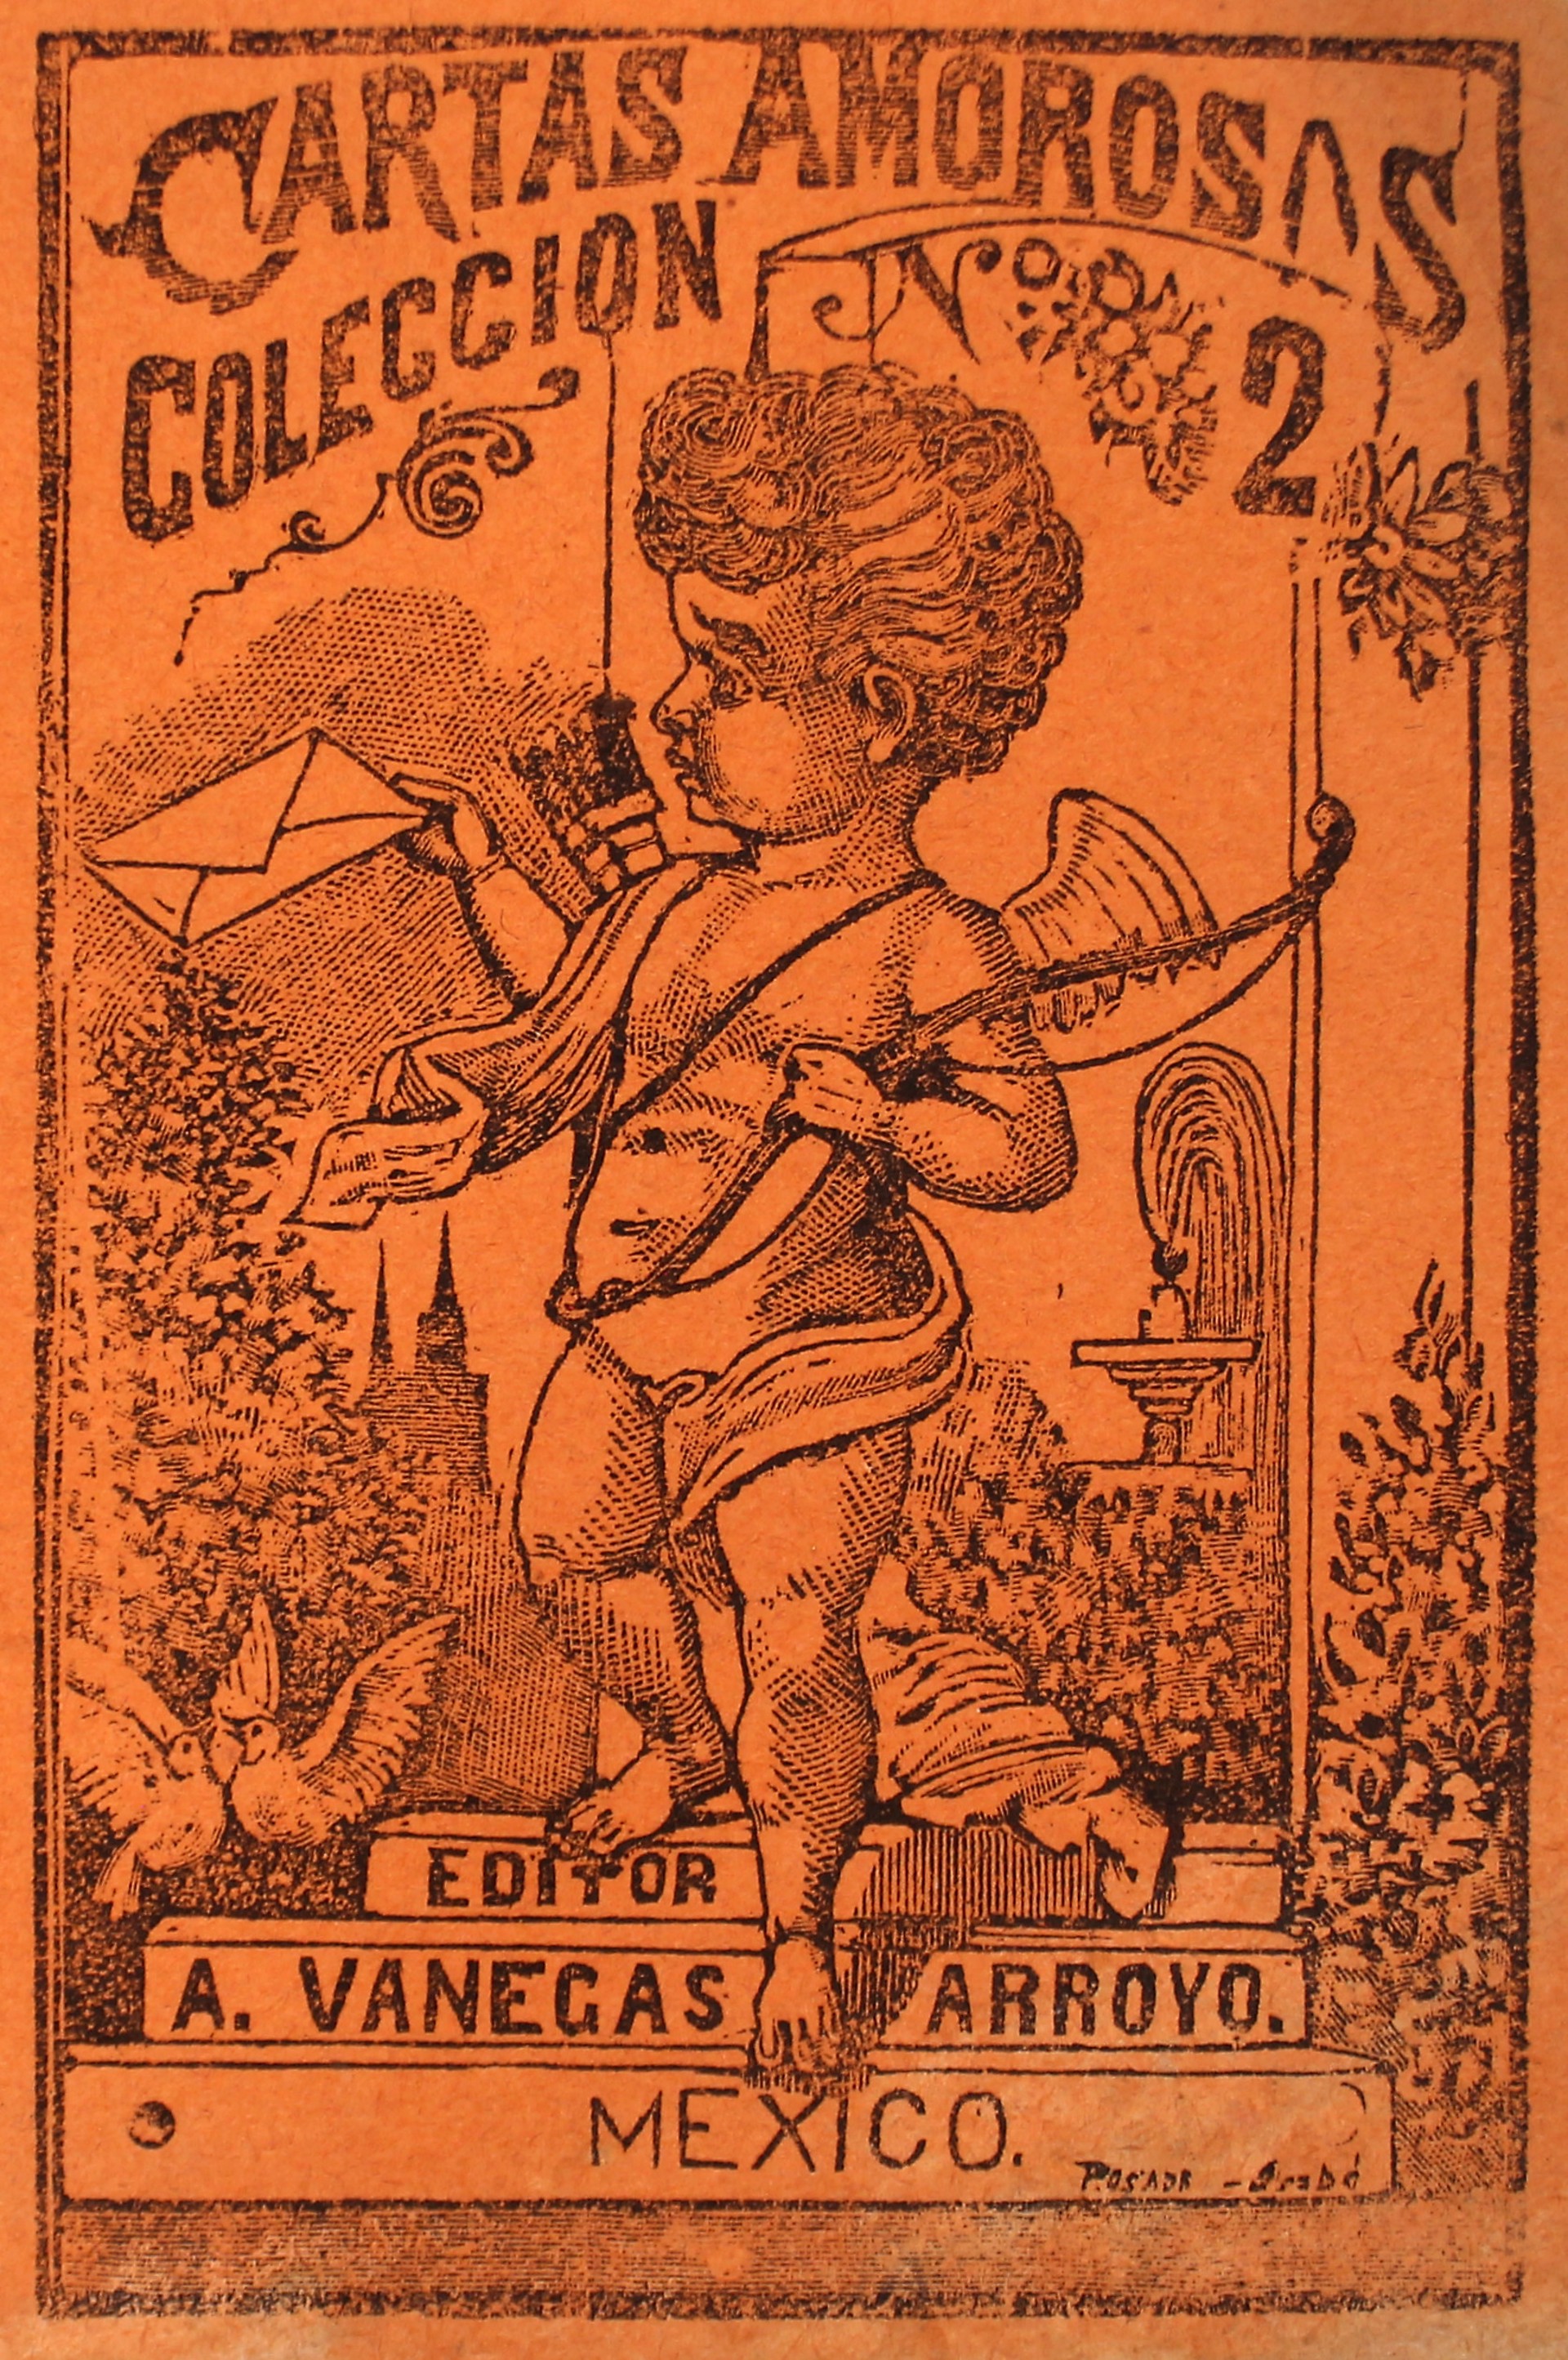 Coleccion de Cartas Amorosas, No 2 by José Guadalupe Posada